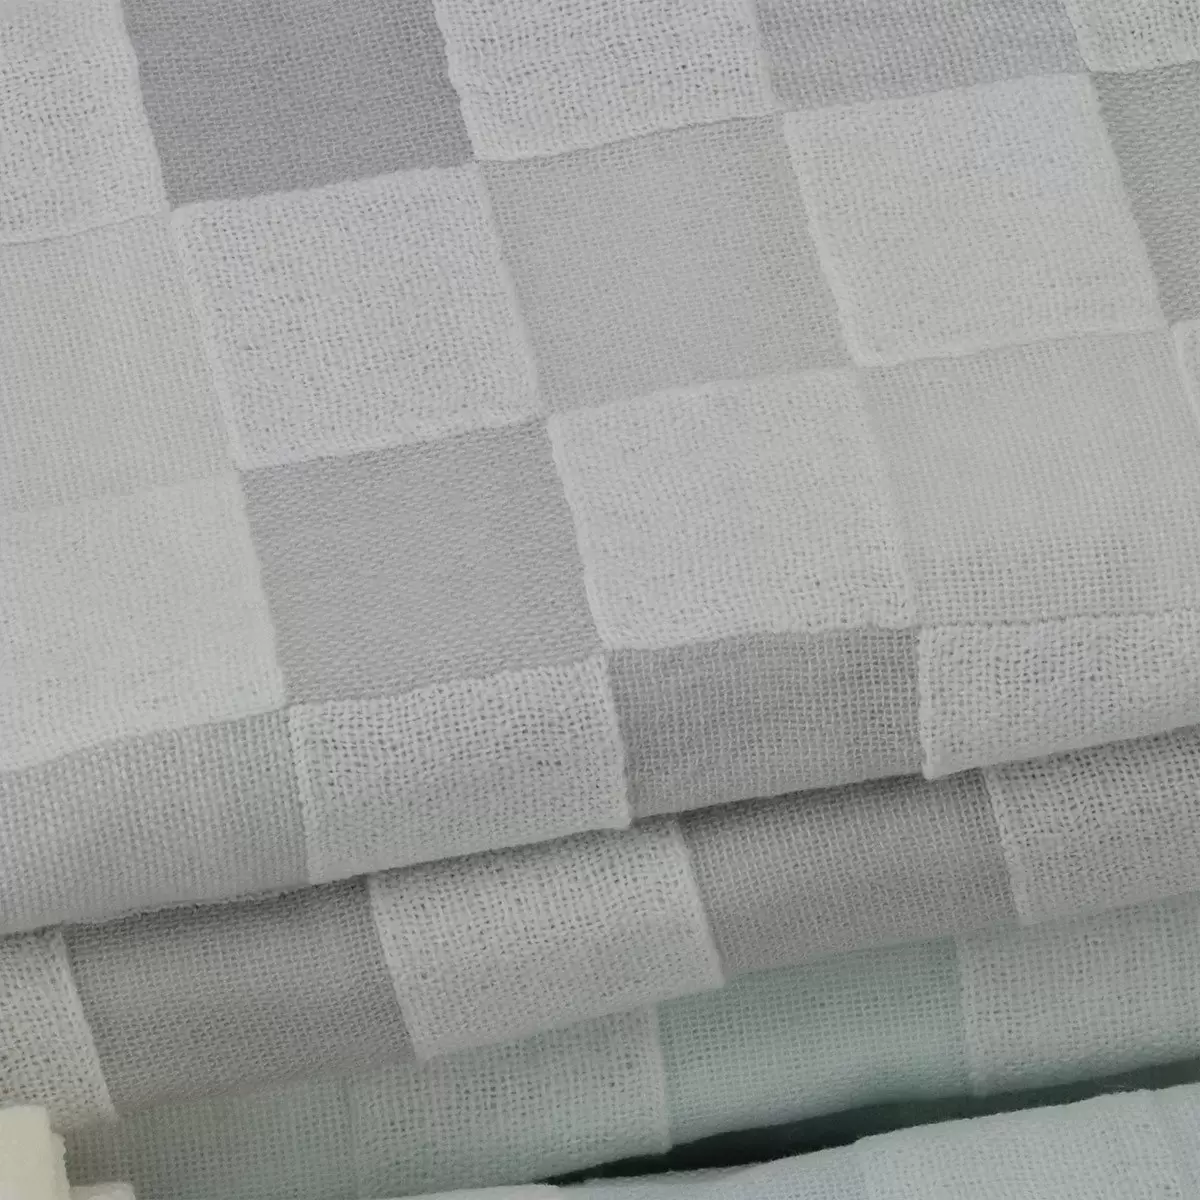 Gemini 雙星毛巾彩色方格雙層紗布浴巾 2入組 66公分 X 137公分 灰 + 粉 / 黃